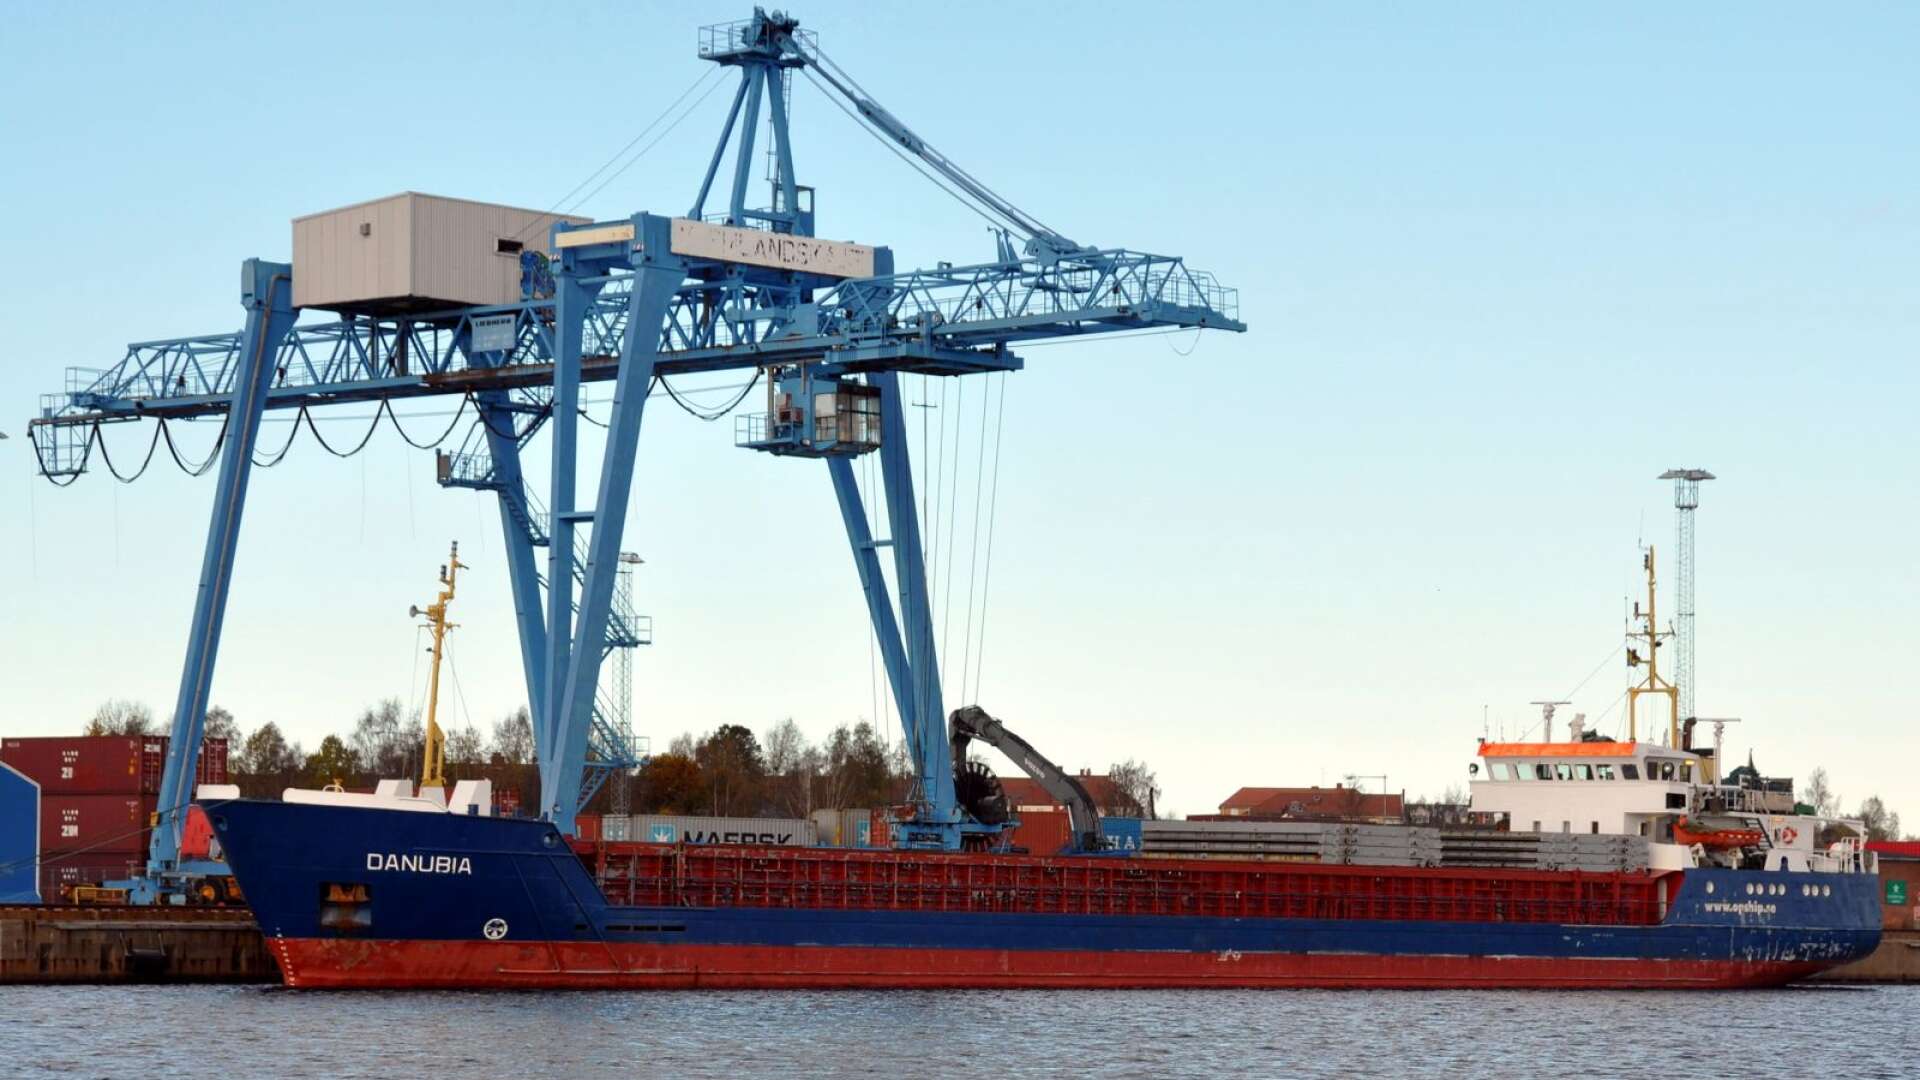 När de nya slussarna tas i bruk 2030 så kommer större fartyg ha möjlighet att trafikera Vänern, skriver insändarskribenten.